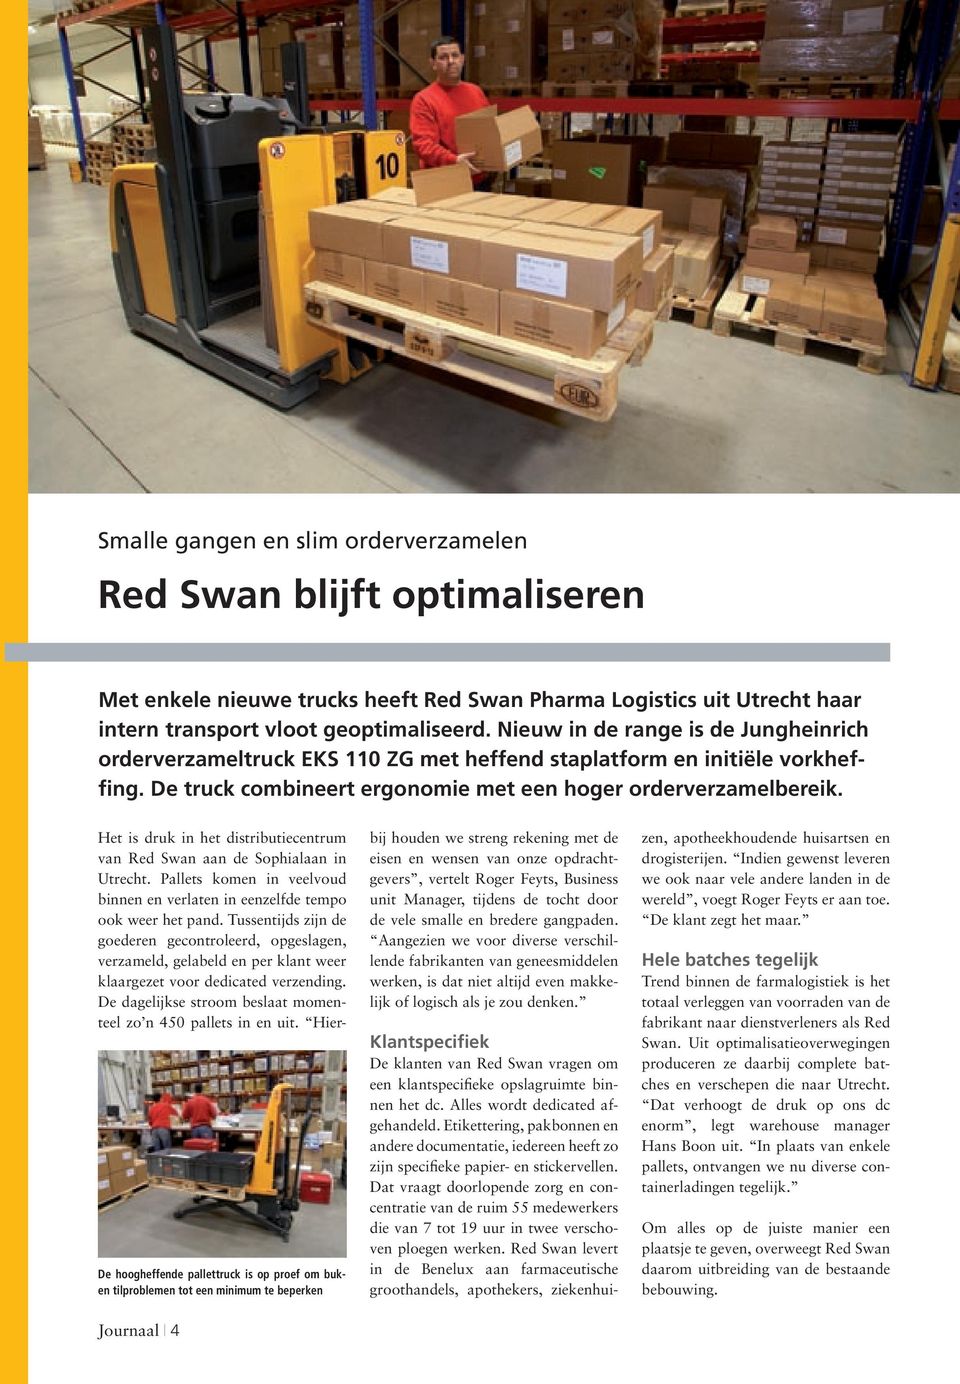 De hoogheffende pallettruck is op proef om buken tilproblemen tot een minimum te beperken Journaal I 4 Het is druk in het distributiecentrum van Red Swan aan de Sophialaan in Utrecht.